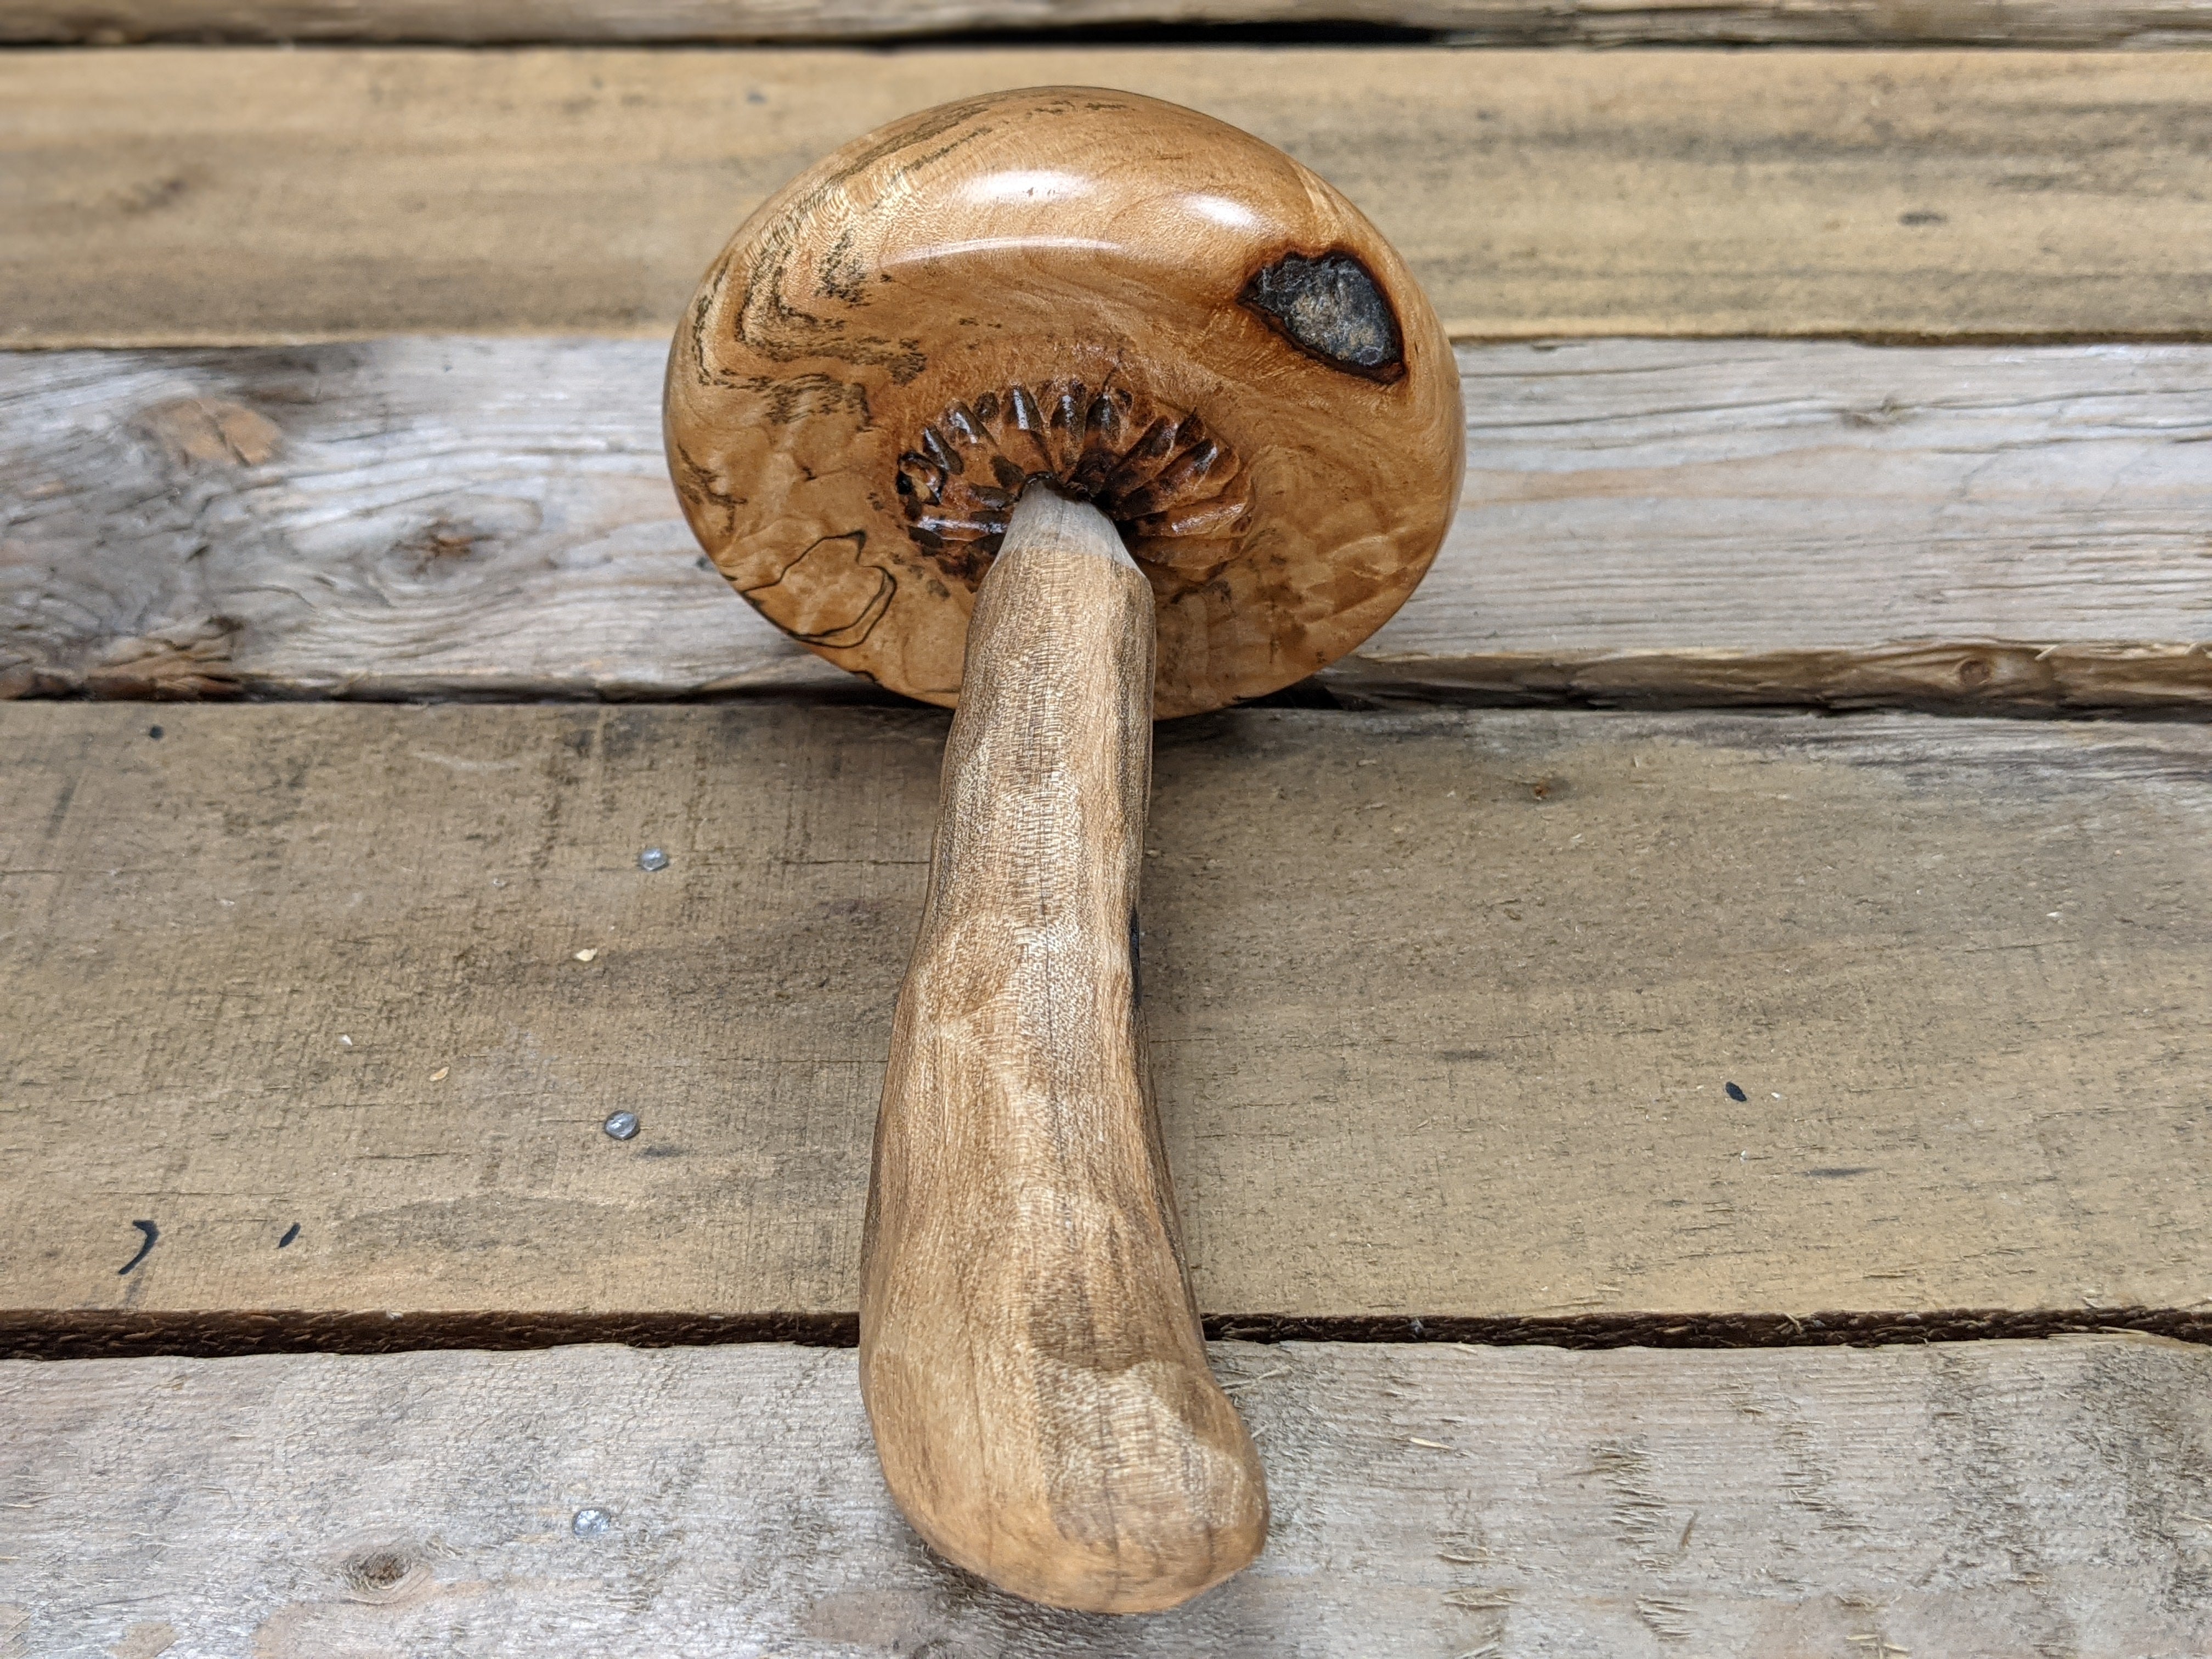 Figured spalted maple and cottonwood darning mushroom